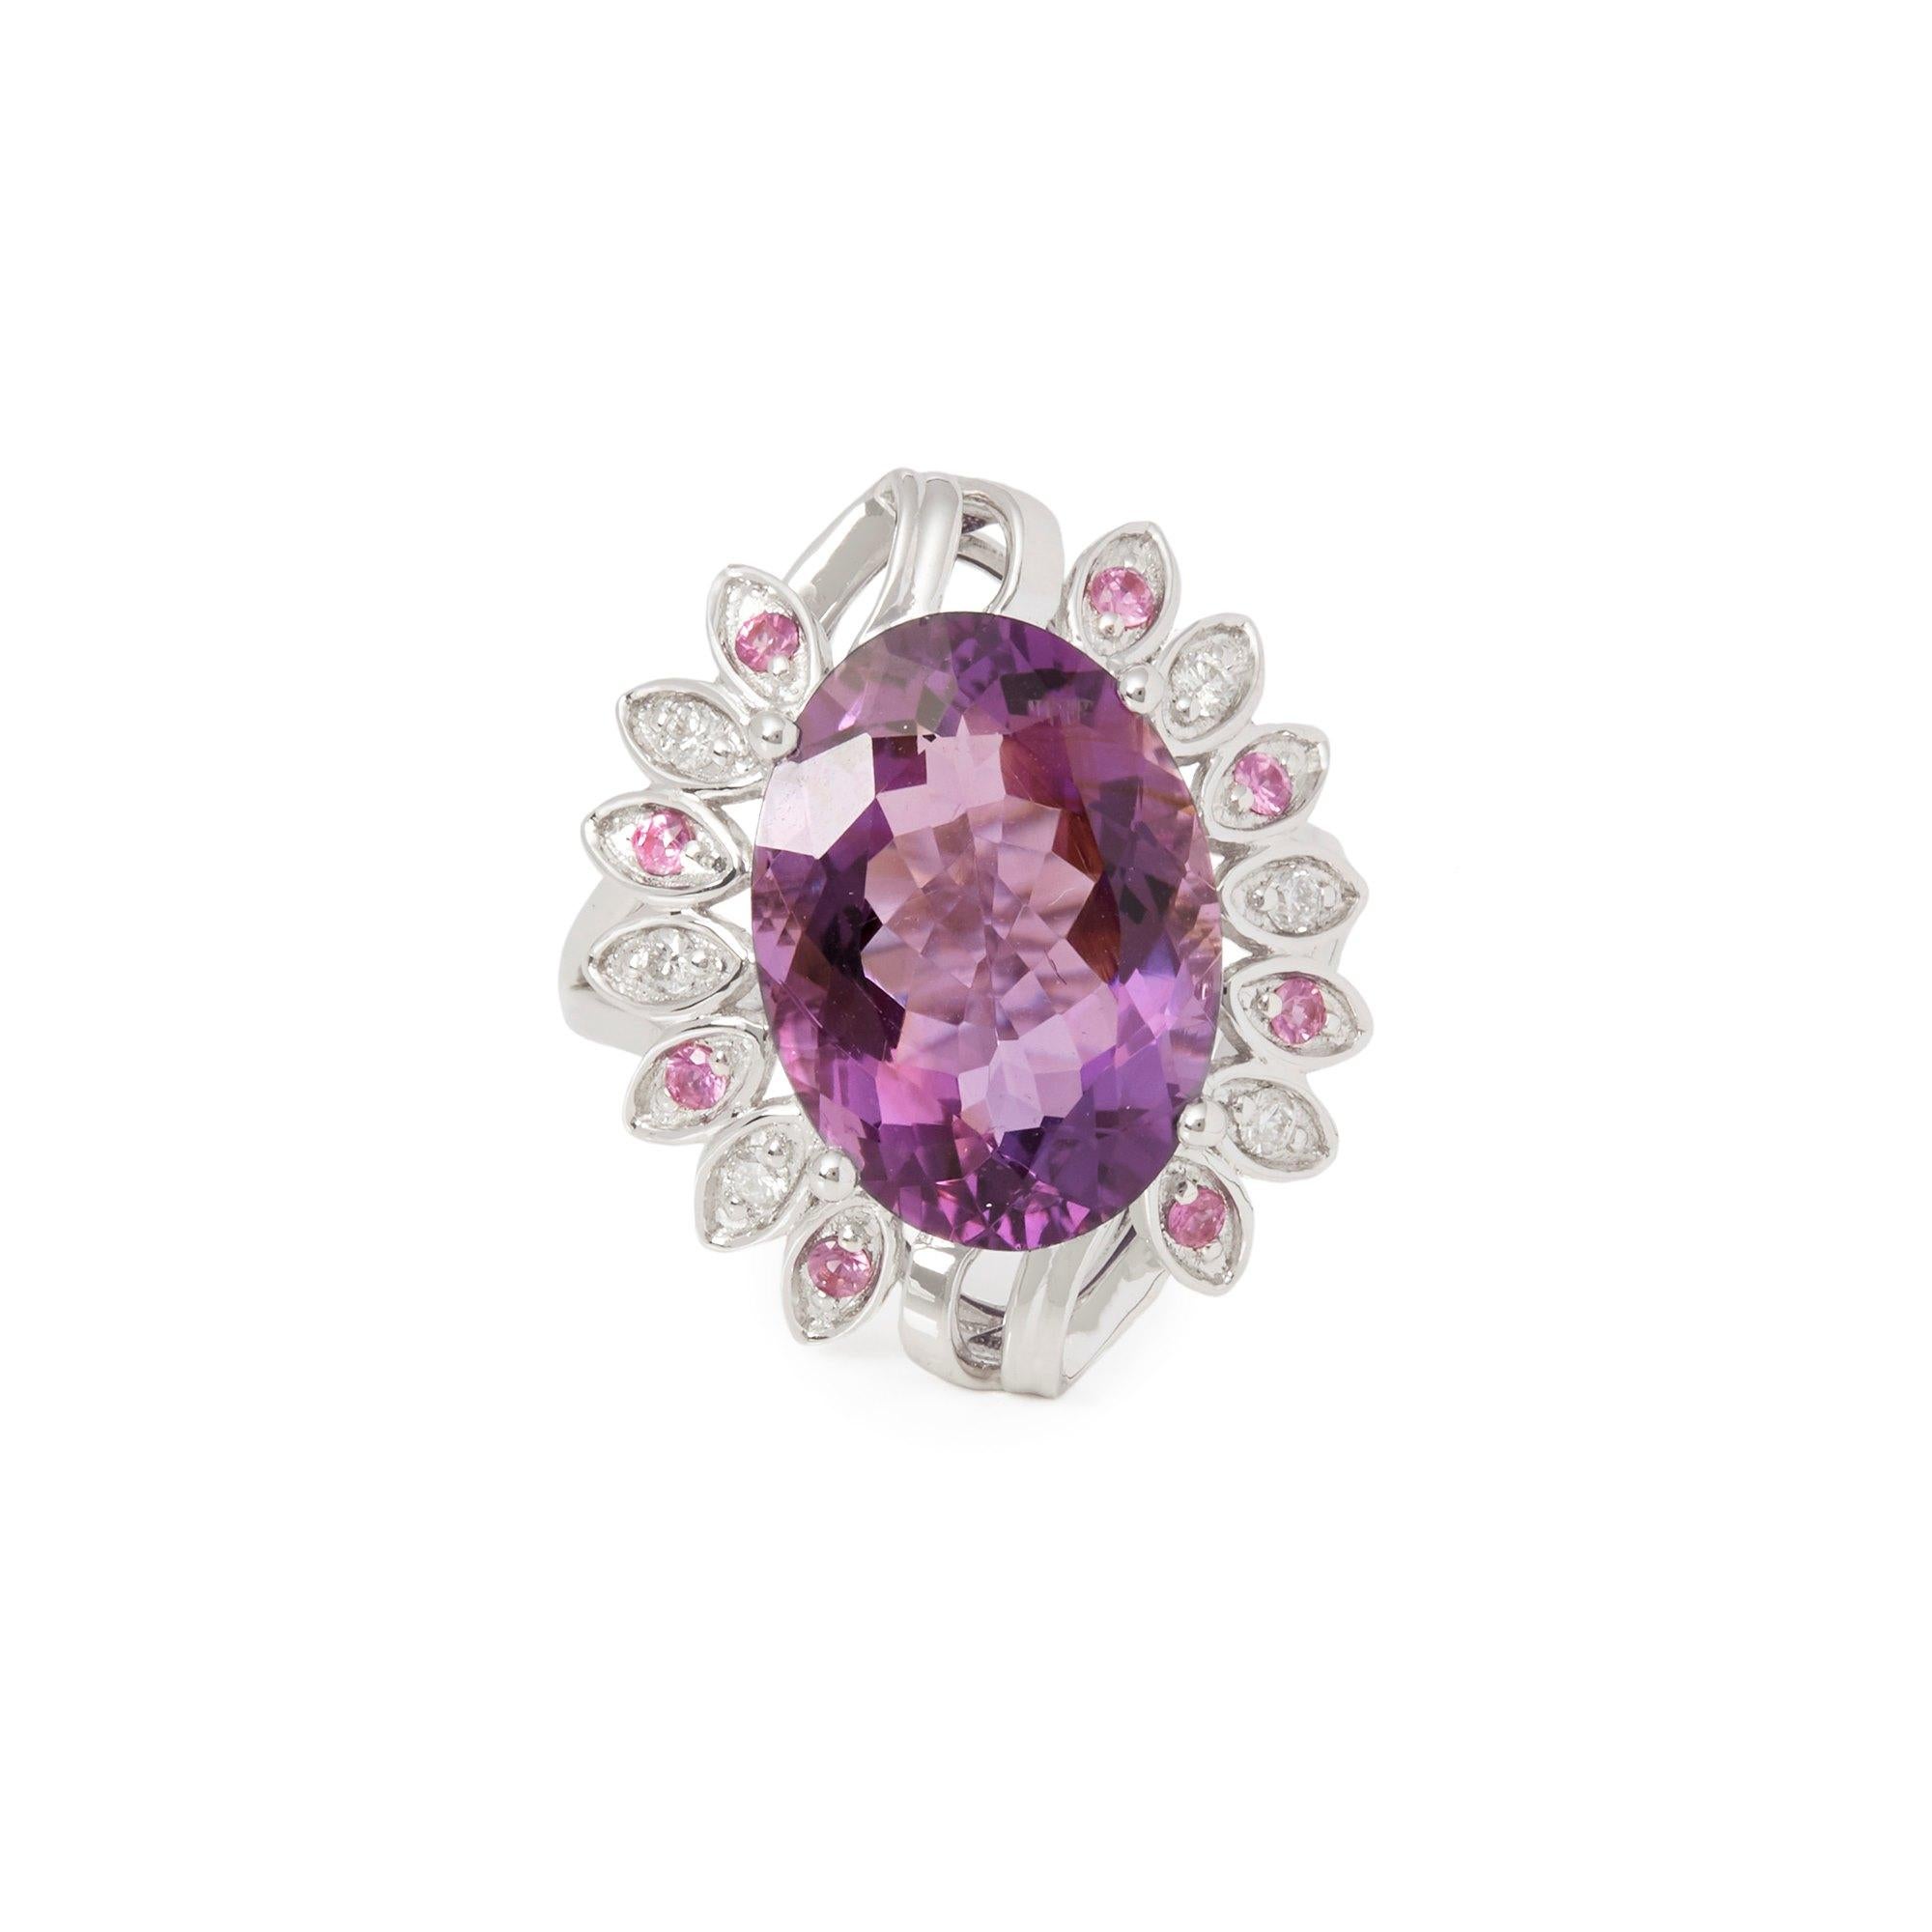 Dieser von David Jerome entworfene Ring stammt aus seiner Privatsammlung und enthält einen Amethysten im Ovalschliff mit einem Gesamtgewicht von 7,07 Karat, der in Russland gewonnen wurde. Besetzt mit runden Diamanten im Brillantschliff und rosa